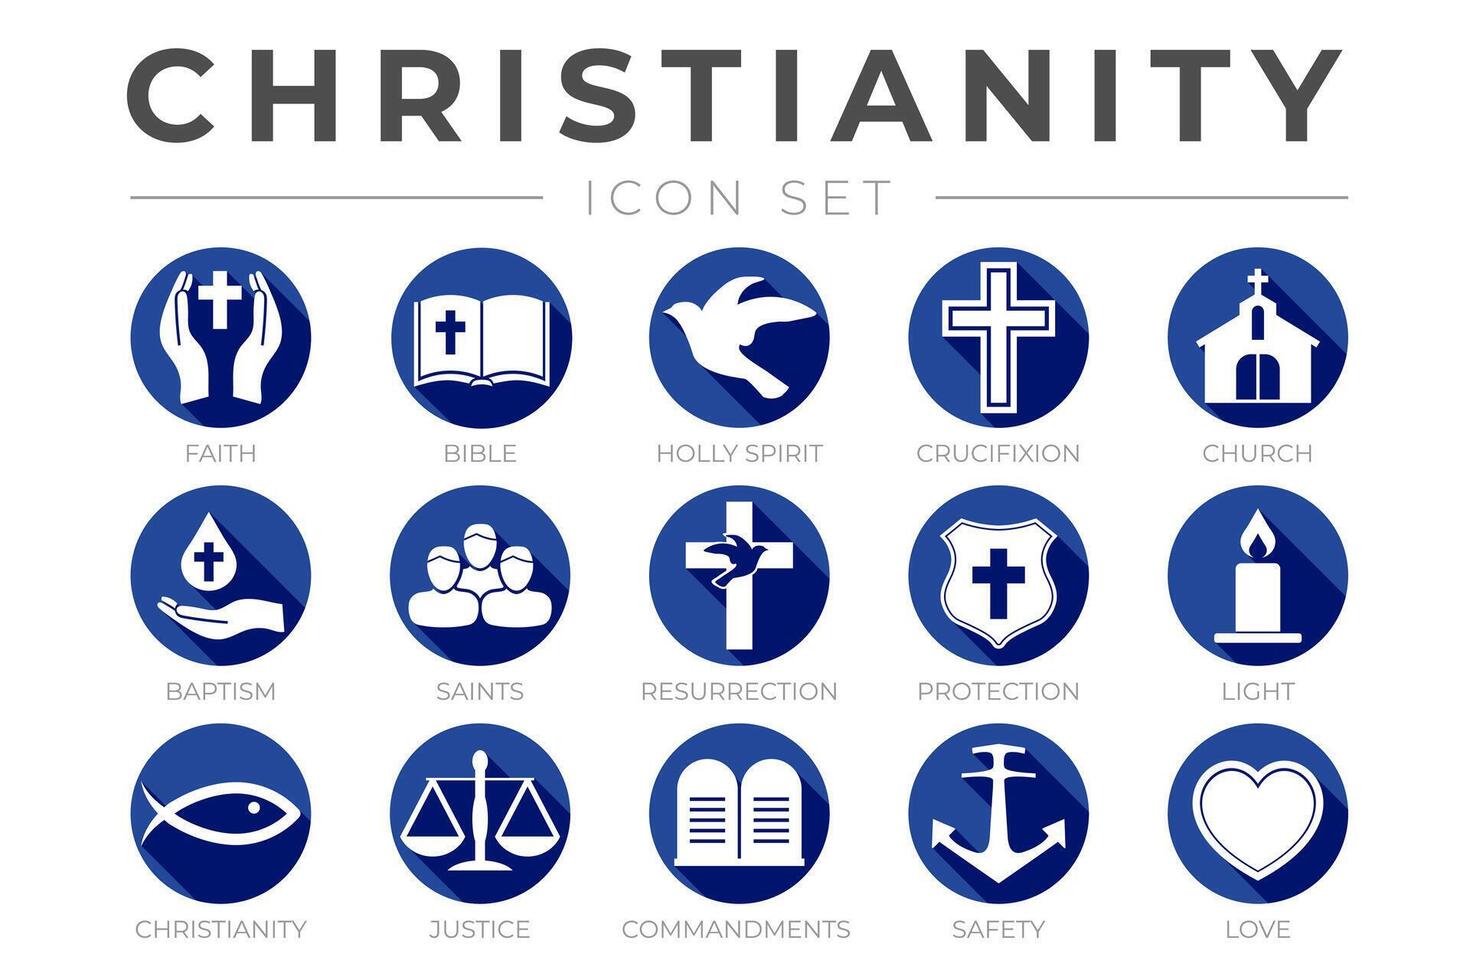 azul e branco cristandade ícone conjunto com fé, Bíblia, crucificação , batismo, igreja, ressurreição, piedosos espírito, santos, mandamentos, luz, proteção, justiça, segurança e amor cor ícones vetor